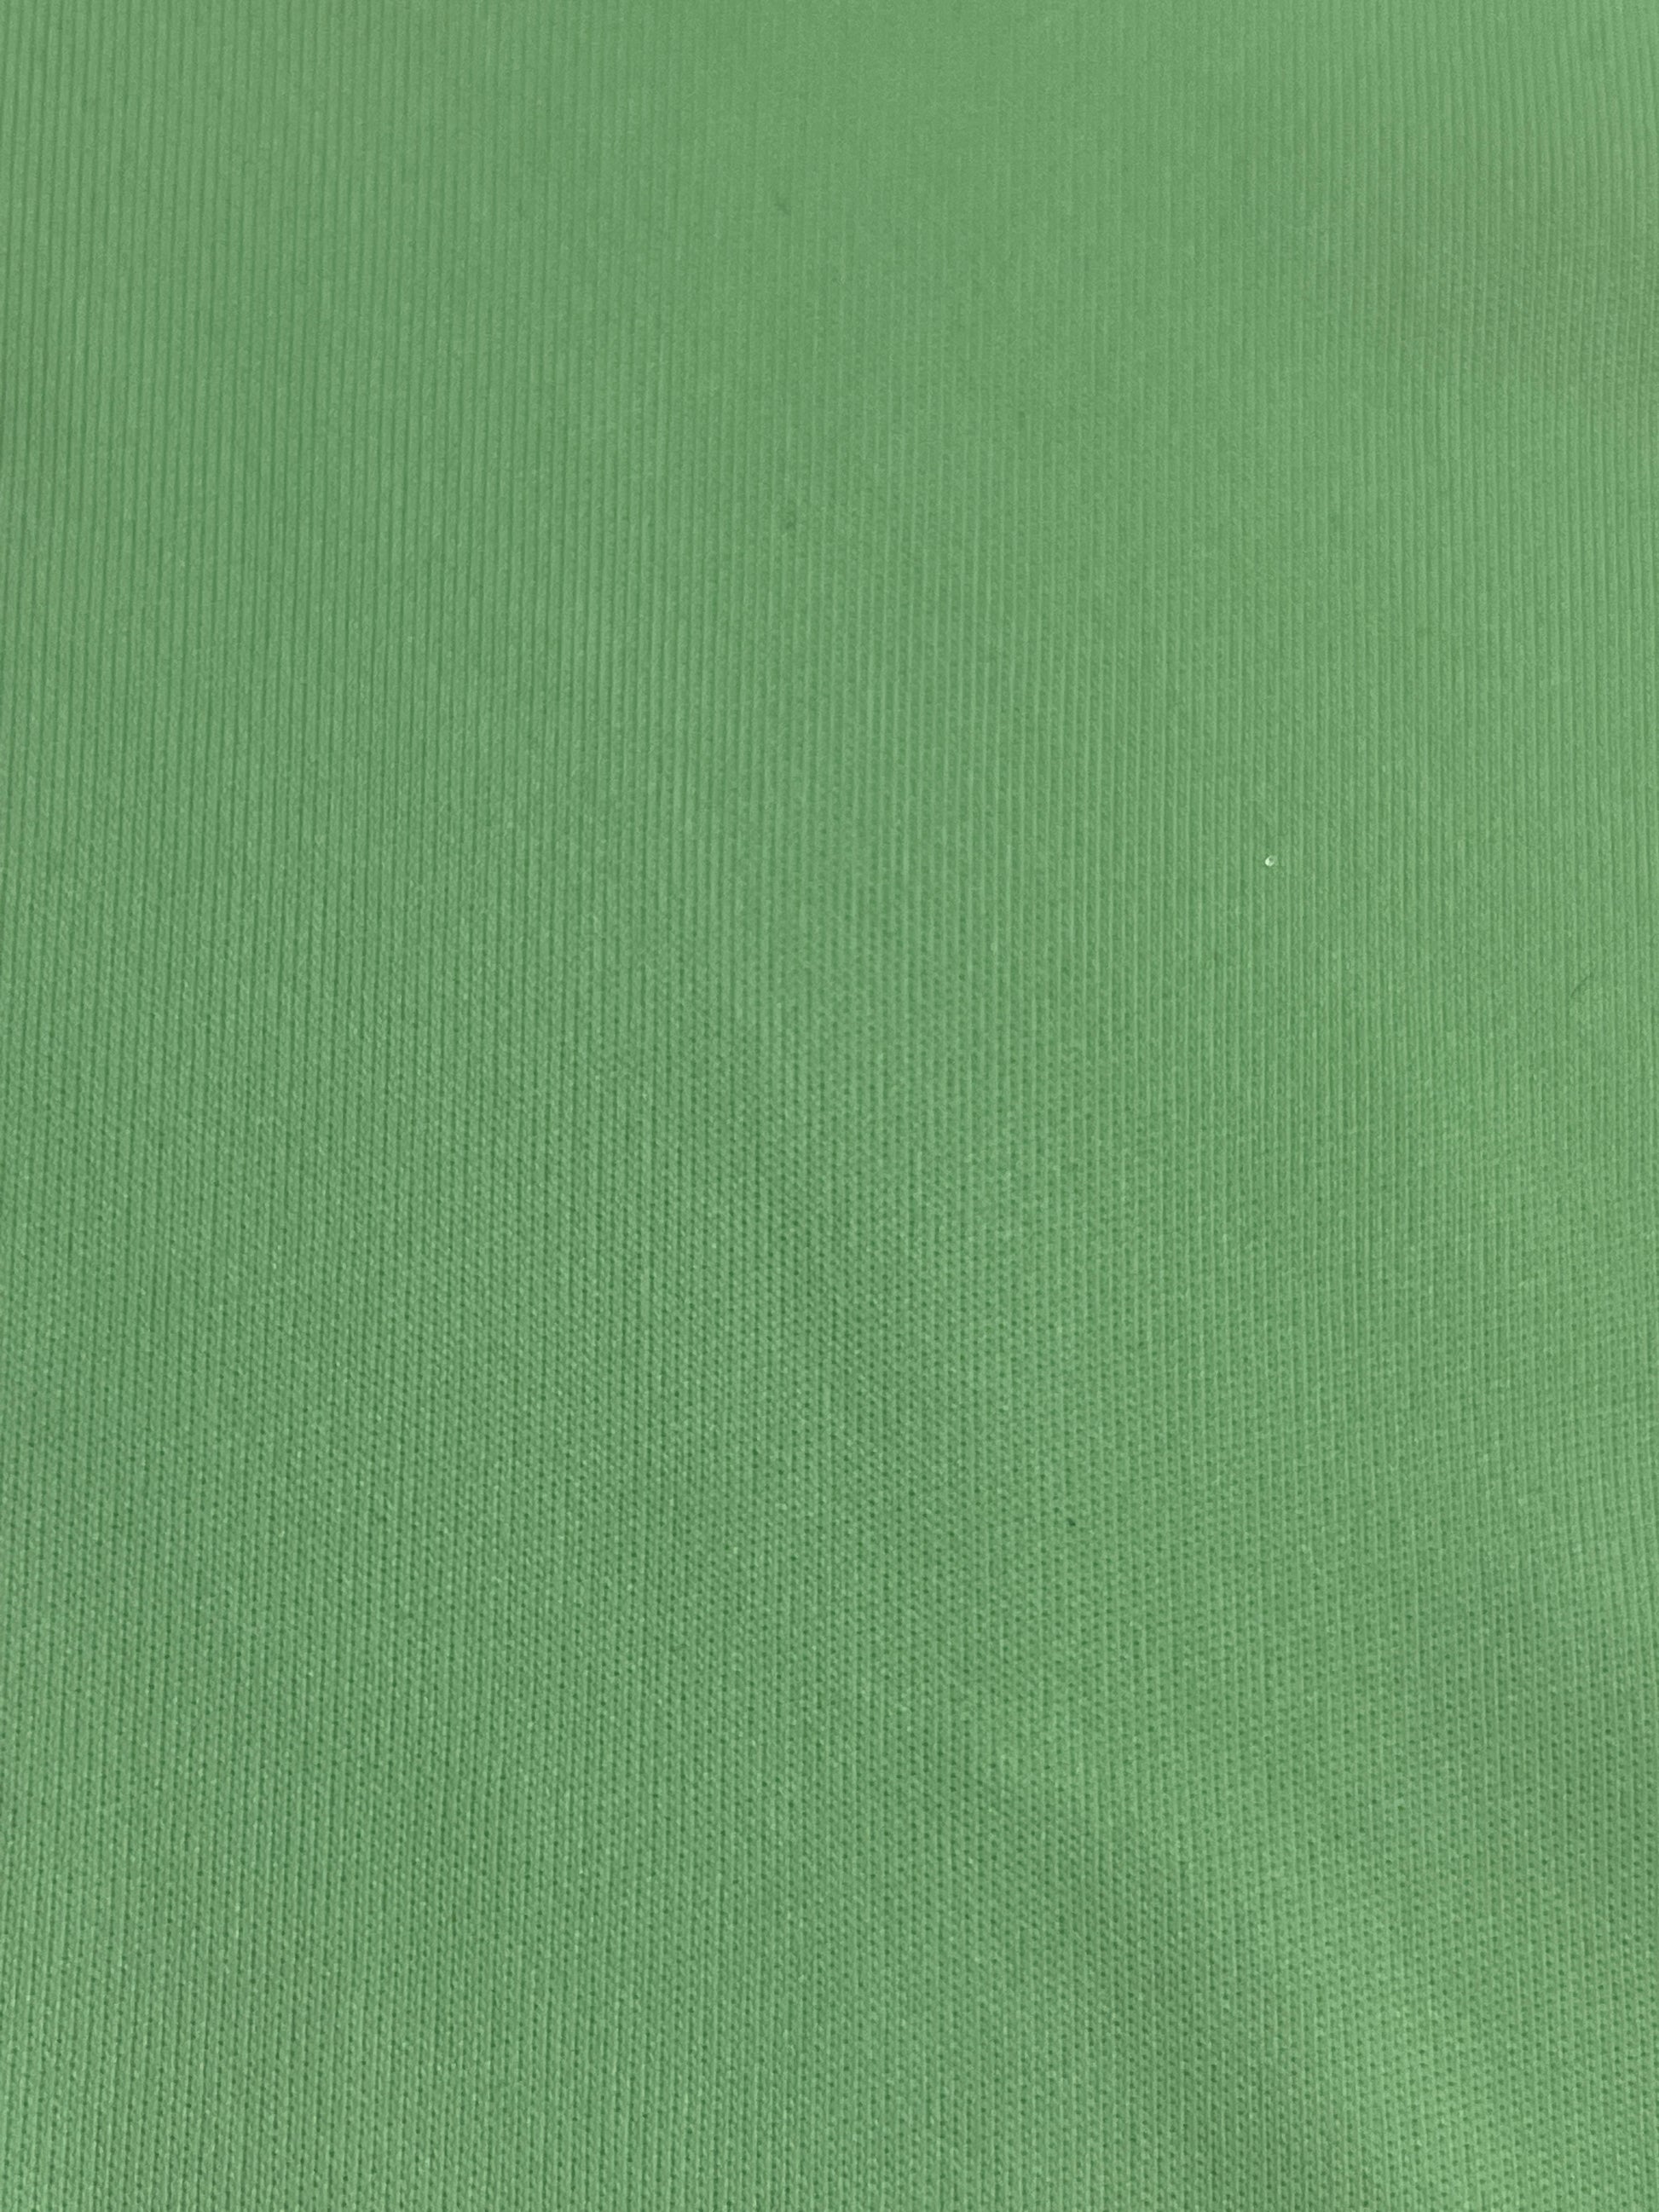 SKYTHRENE® Vat Olive Green B/Green 3 Dye for Cotton Fabric Dye